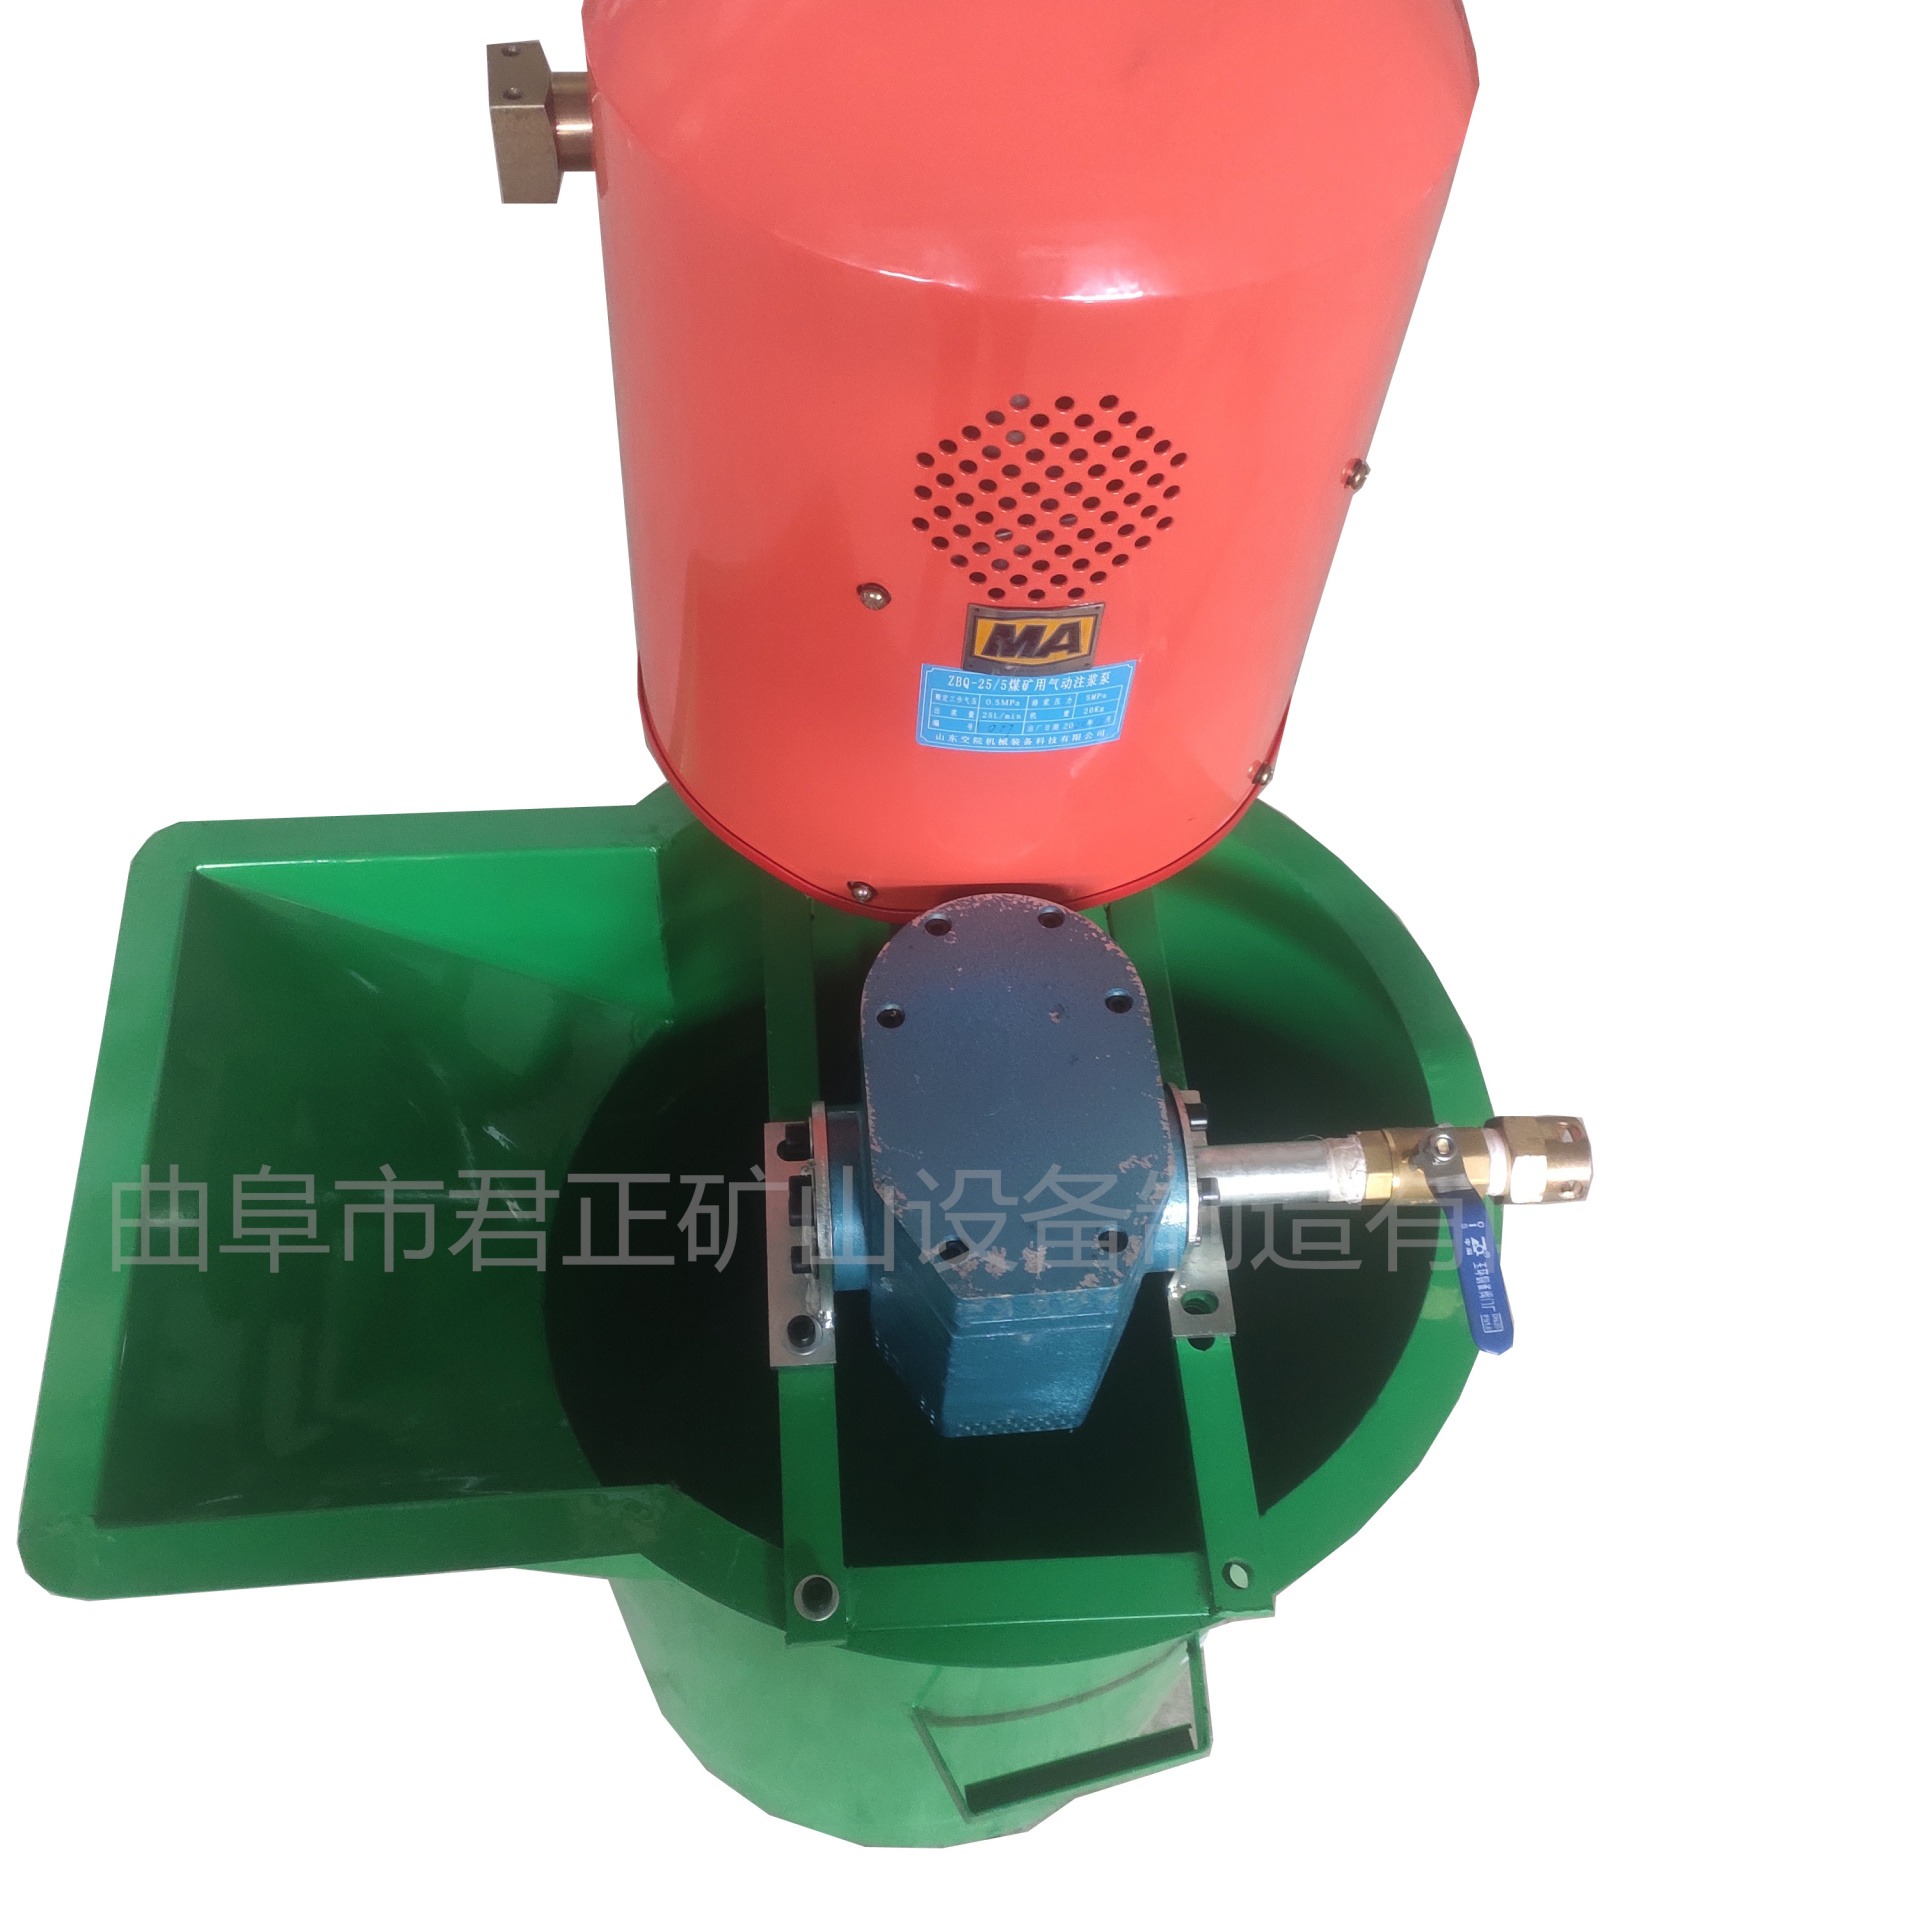 ZBQ25-5-A增压型气动注浆泵详细参数及使用说明，便携式，矿用，工程用，风动，防爆本安型，单缸单液注浆机